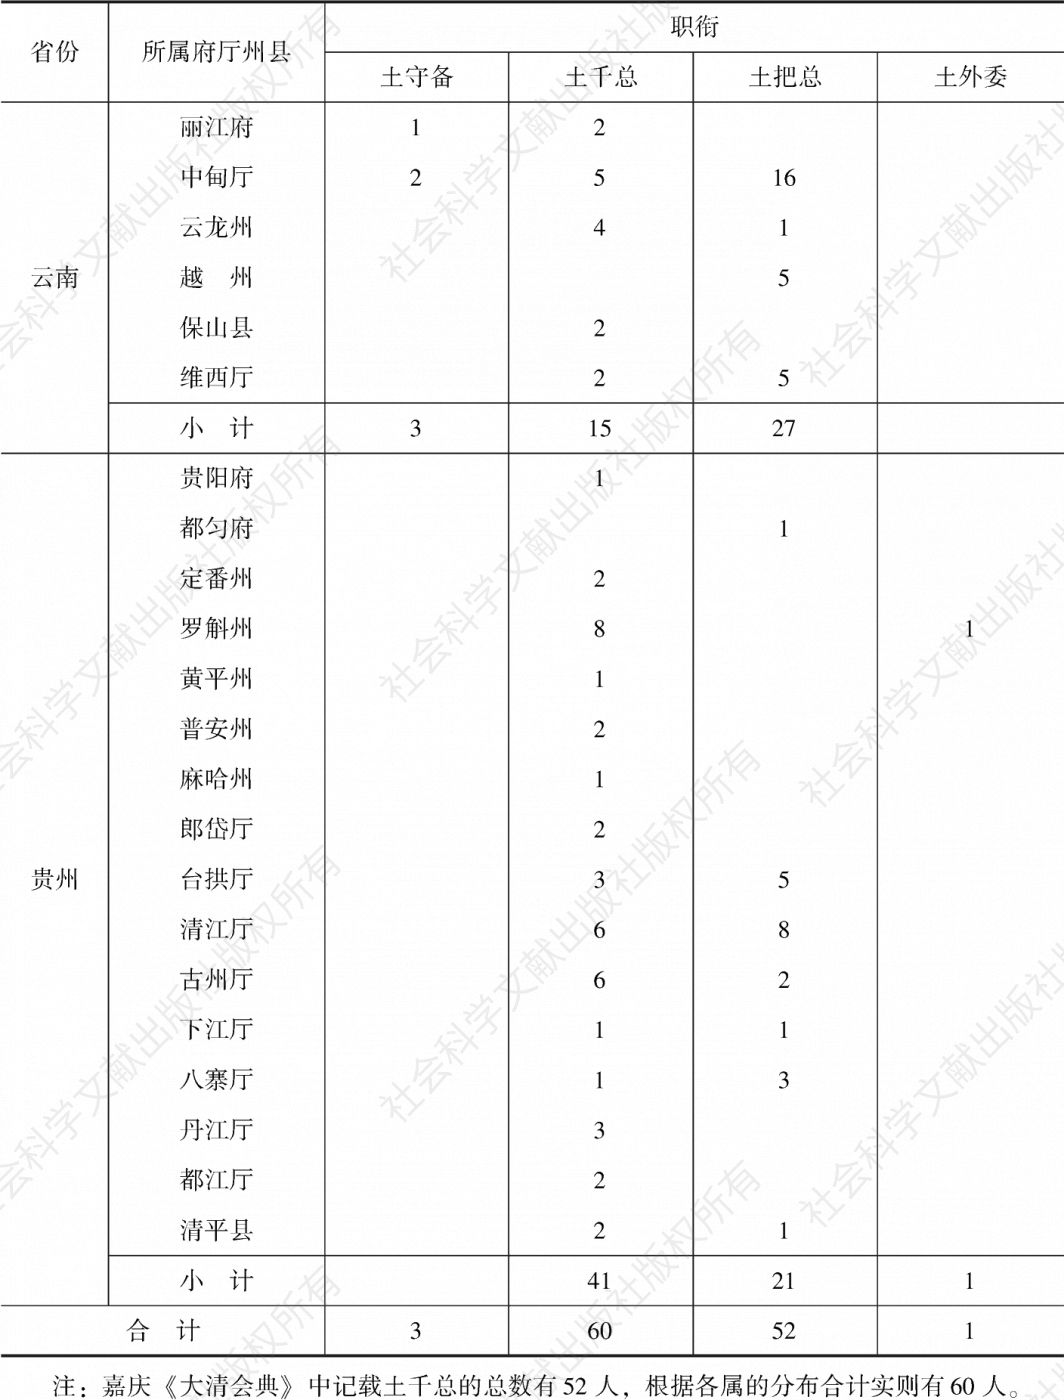 表4-1 嘉庆《大清会典》记载的土弁分布情况-续表